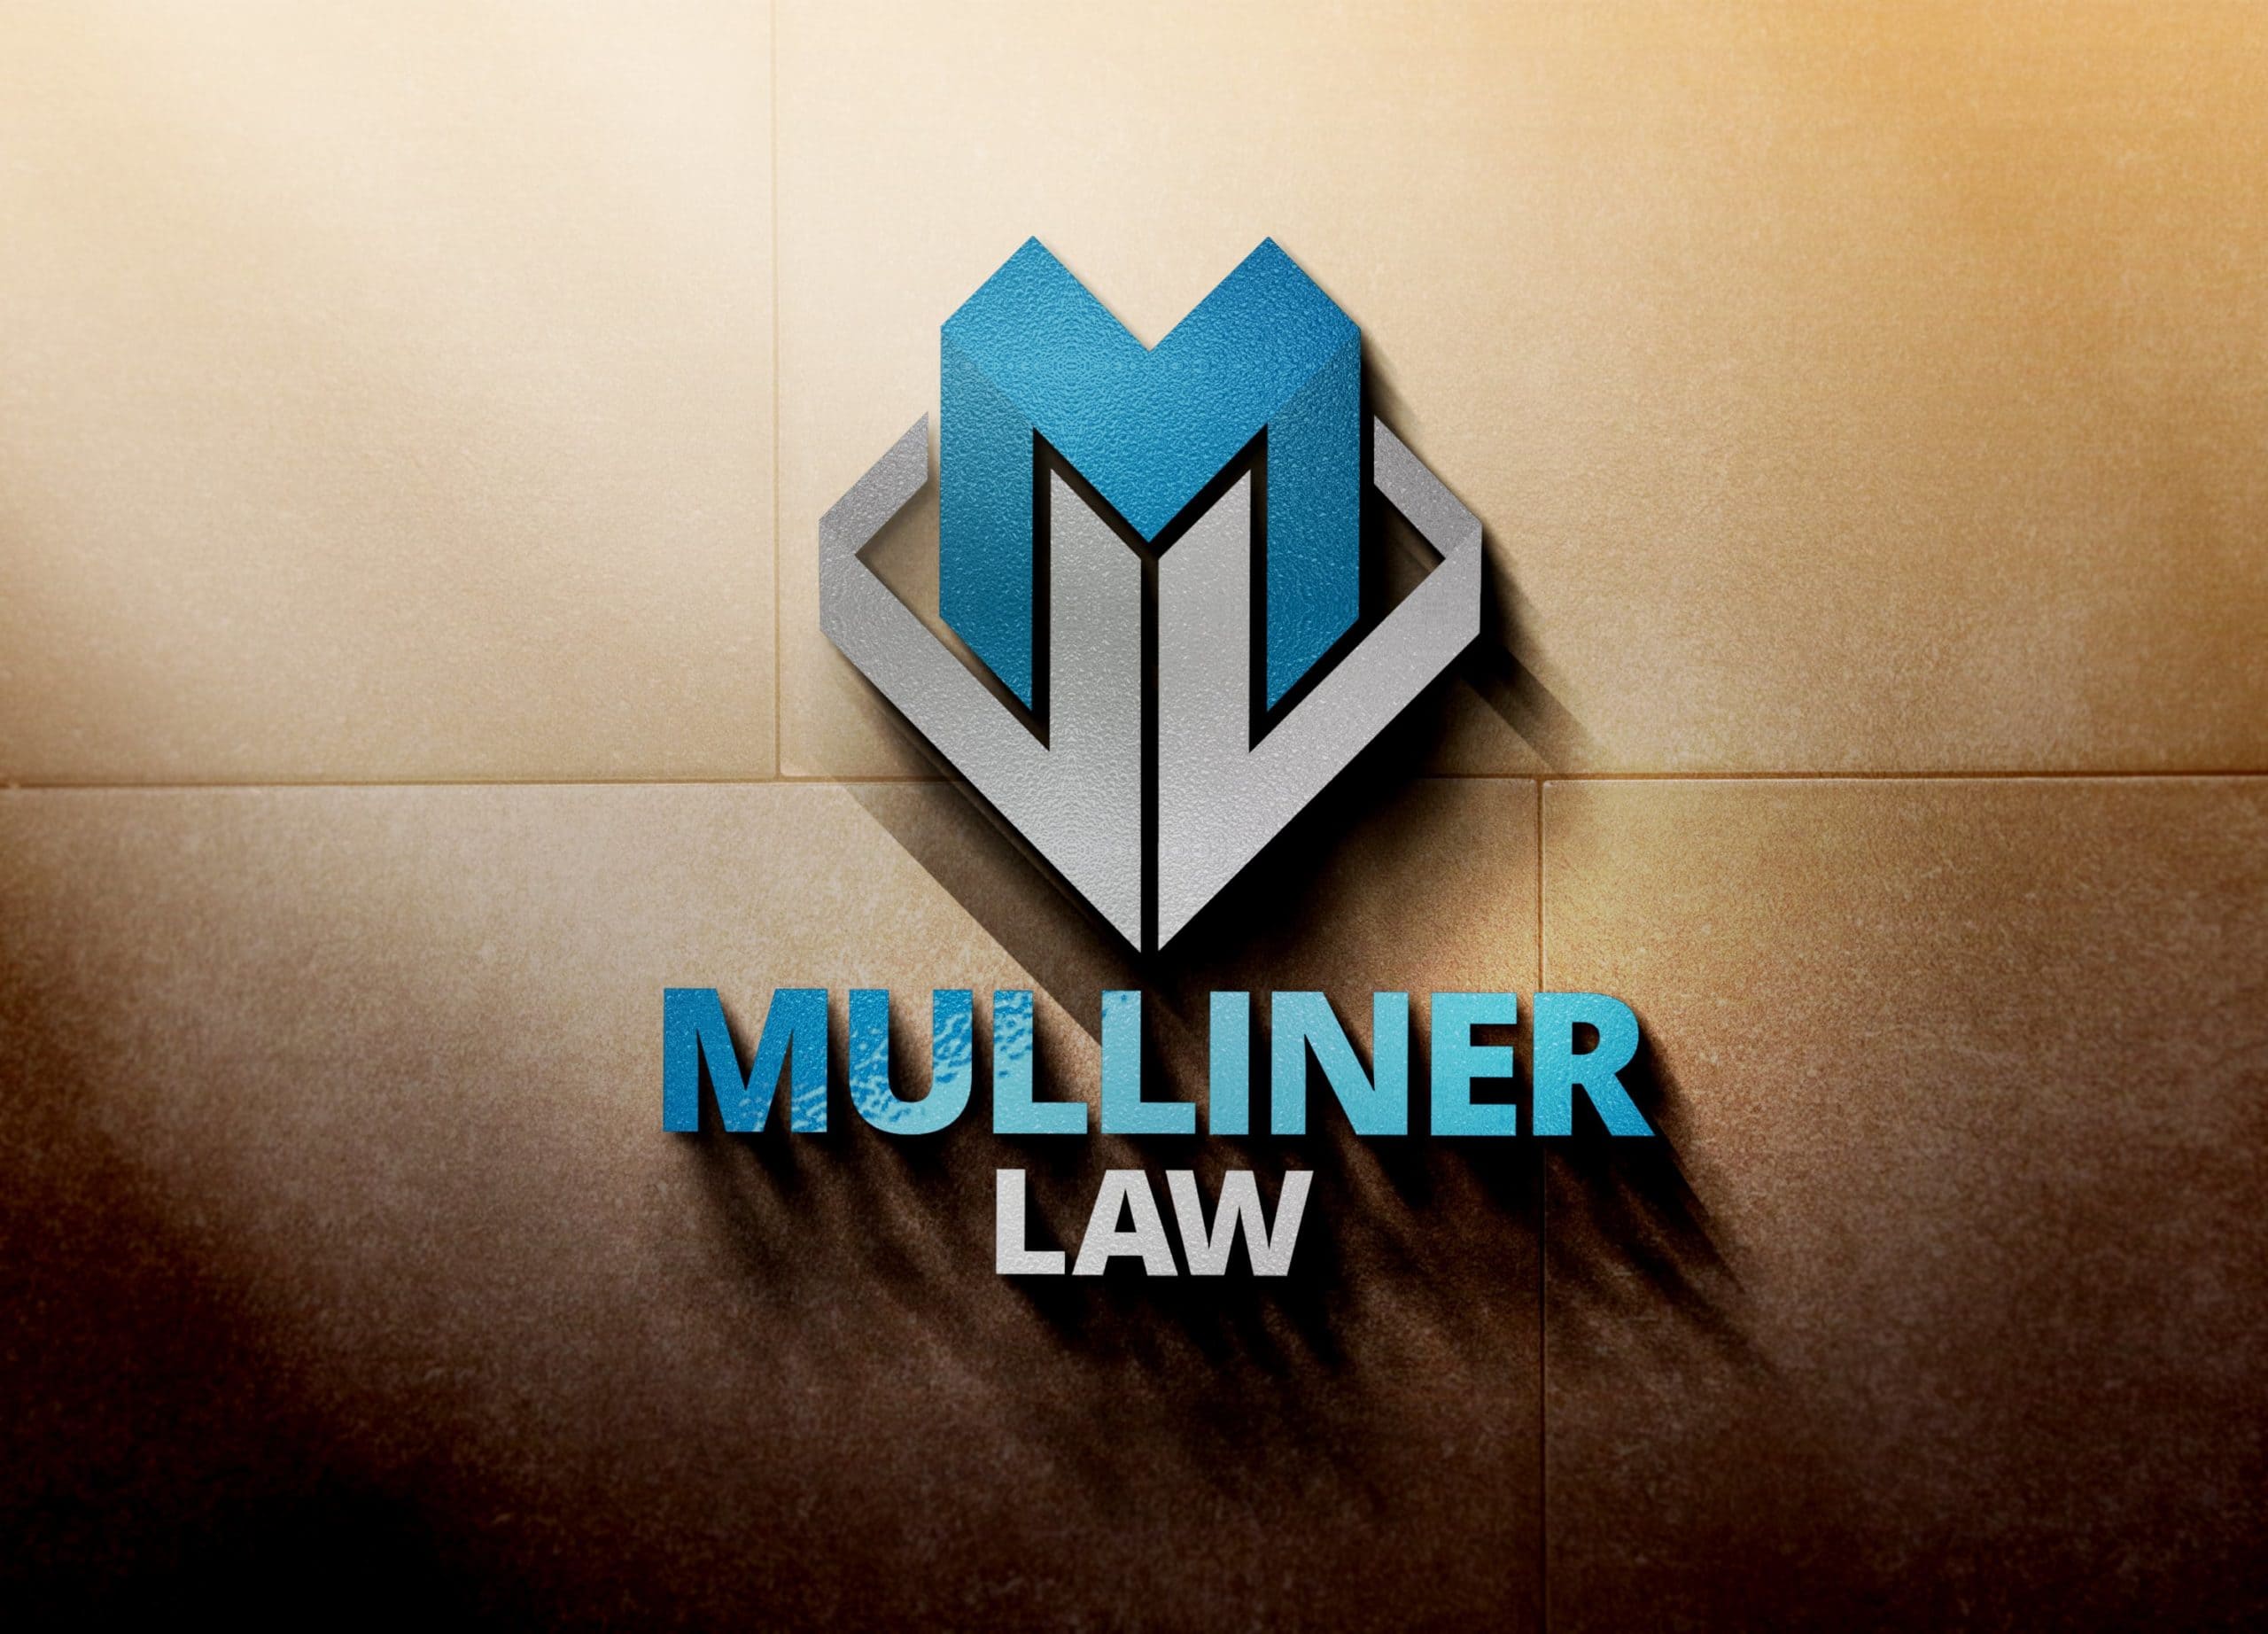 Mulliner Law Branding